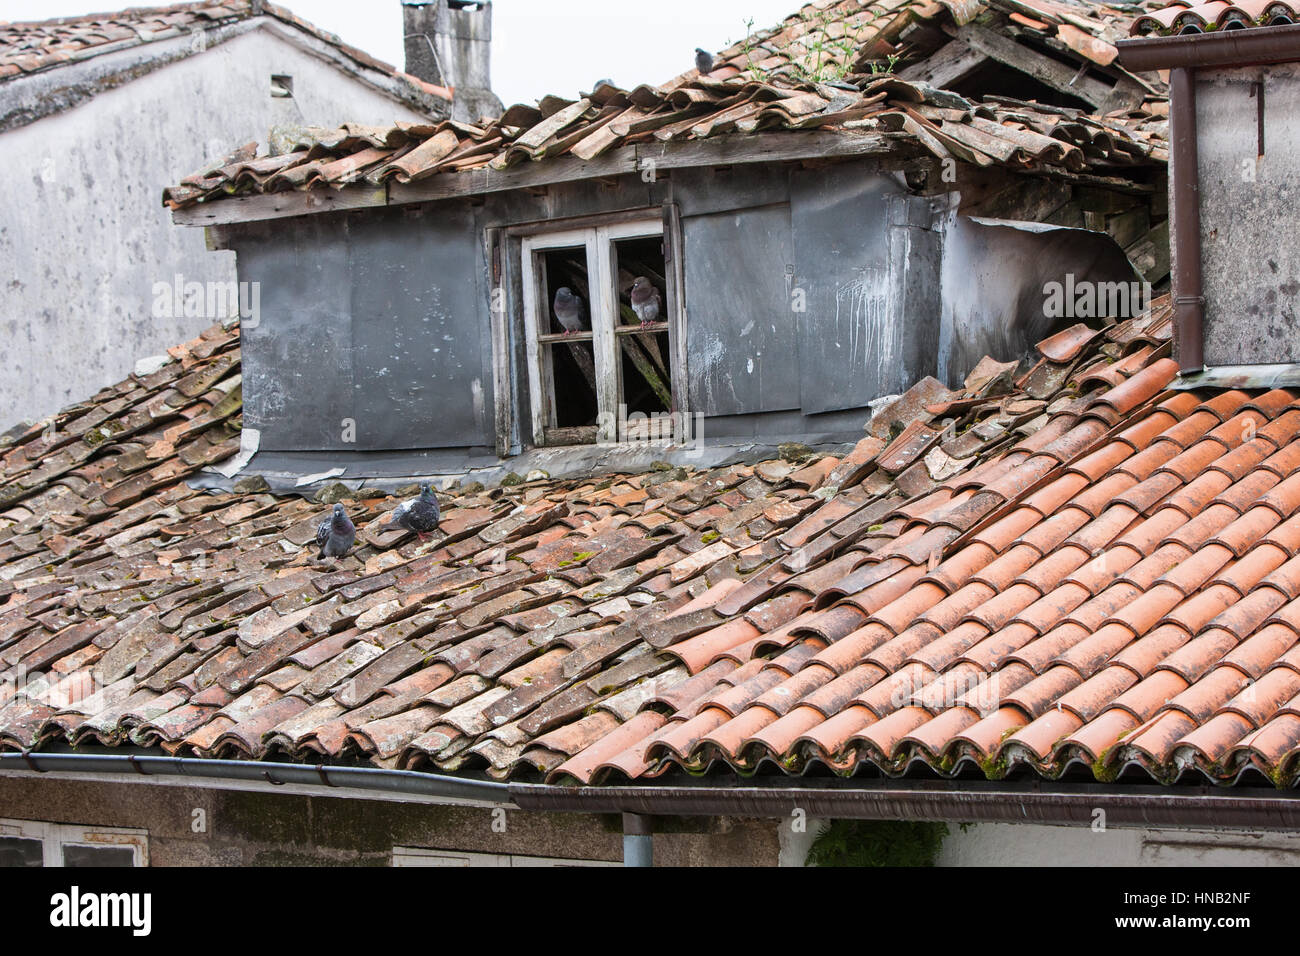 Tetto in necessità di riparazione.piastrelle rotte sulla vecchia proprietà che ha bisogno di manutenzione.Un progetto per mantenere.Santiago centro,Galizia,Spagna,l'Europa. Foto Stock